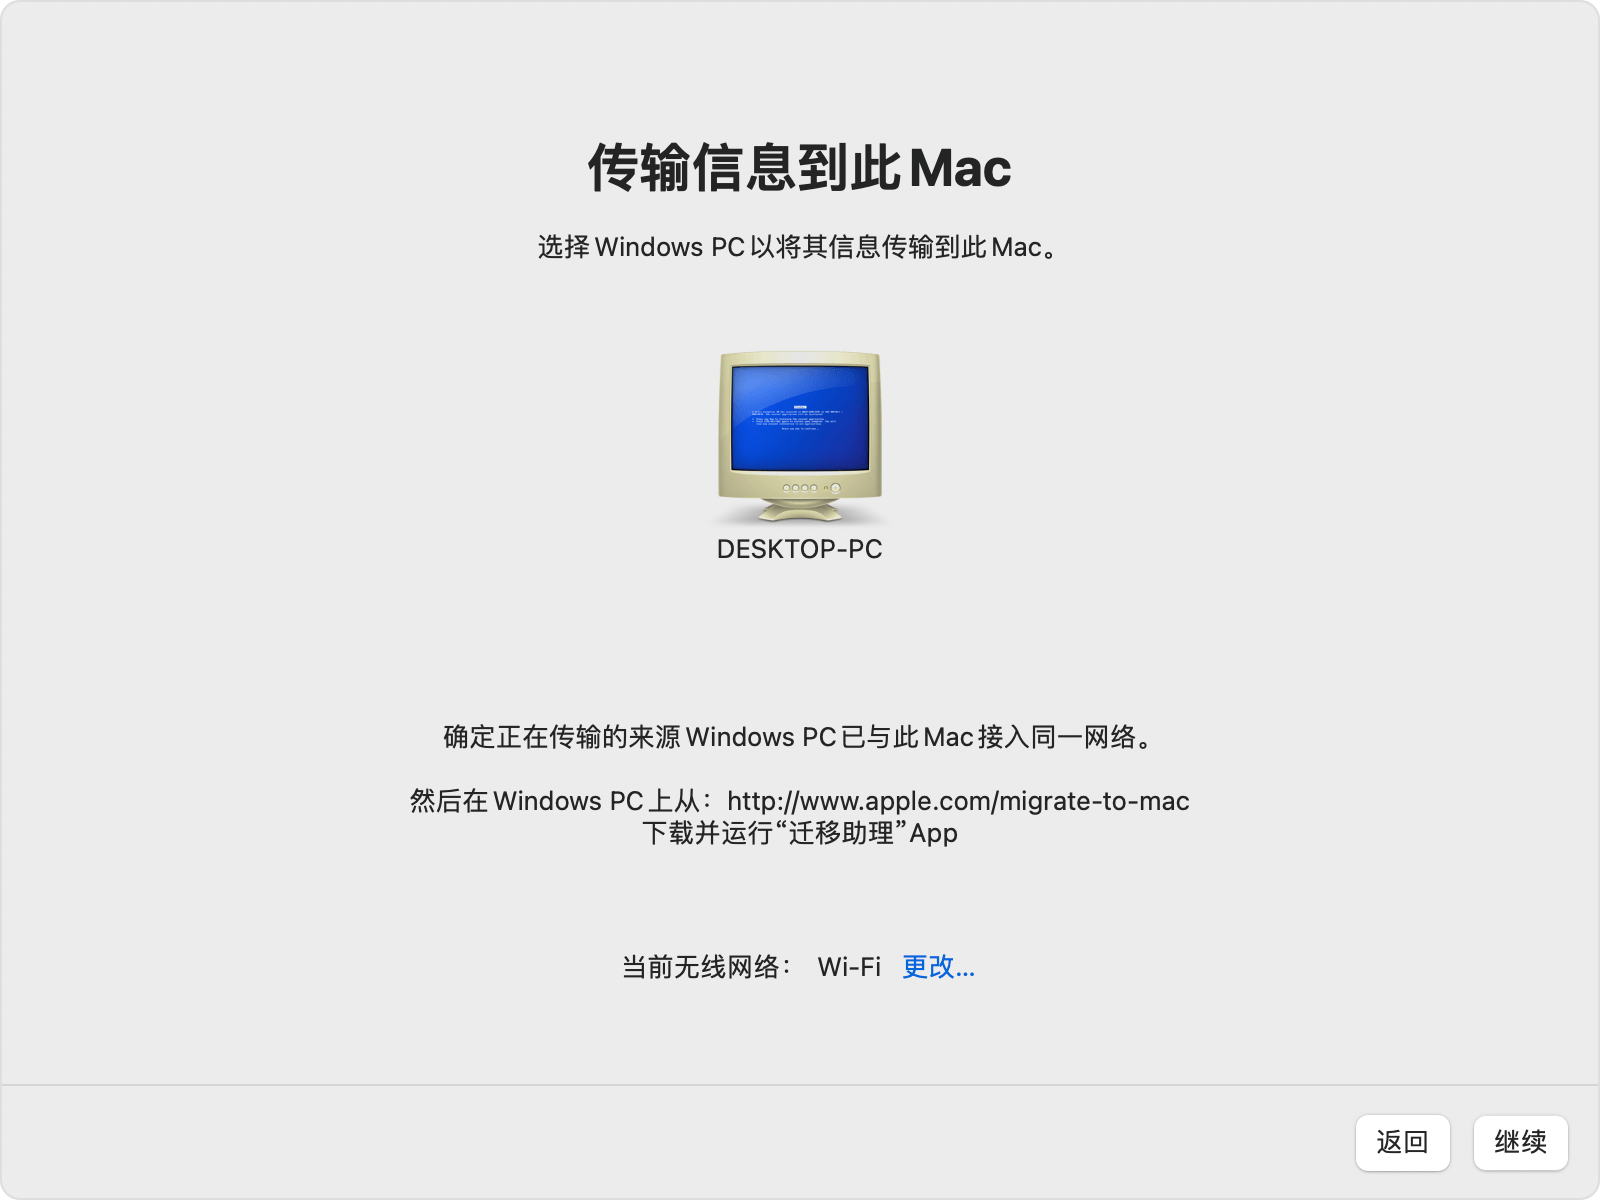 Mac 上的“迁移助理”：选择 Windows PC